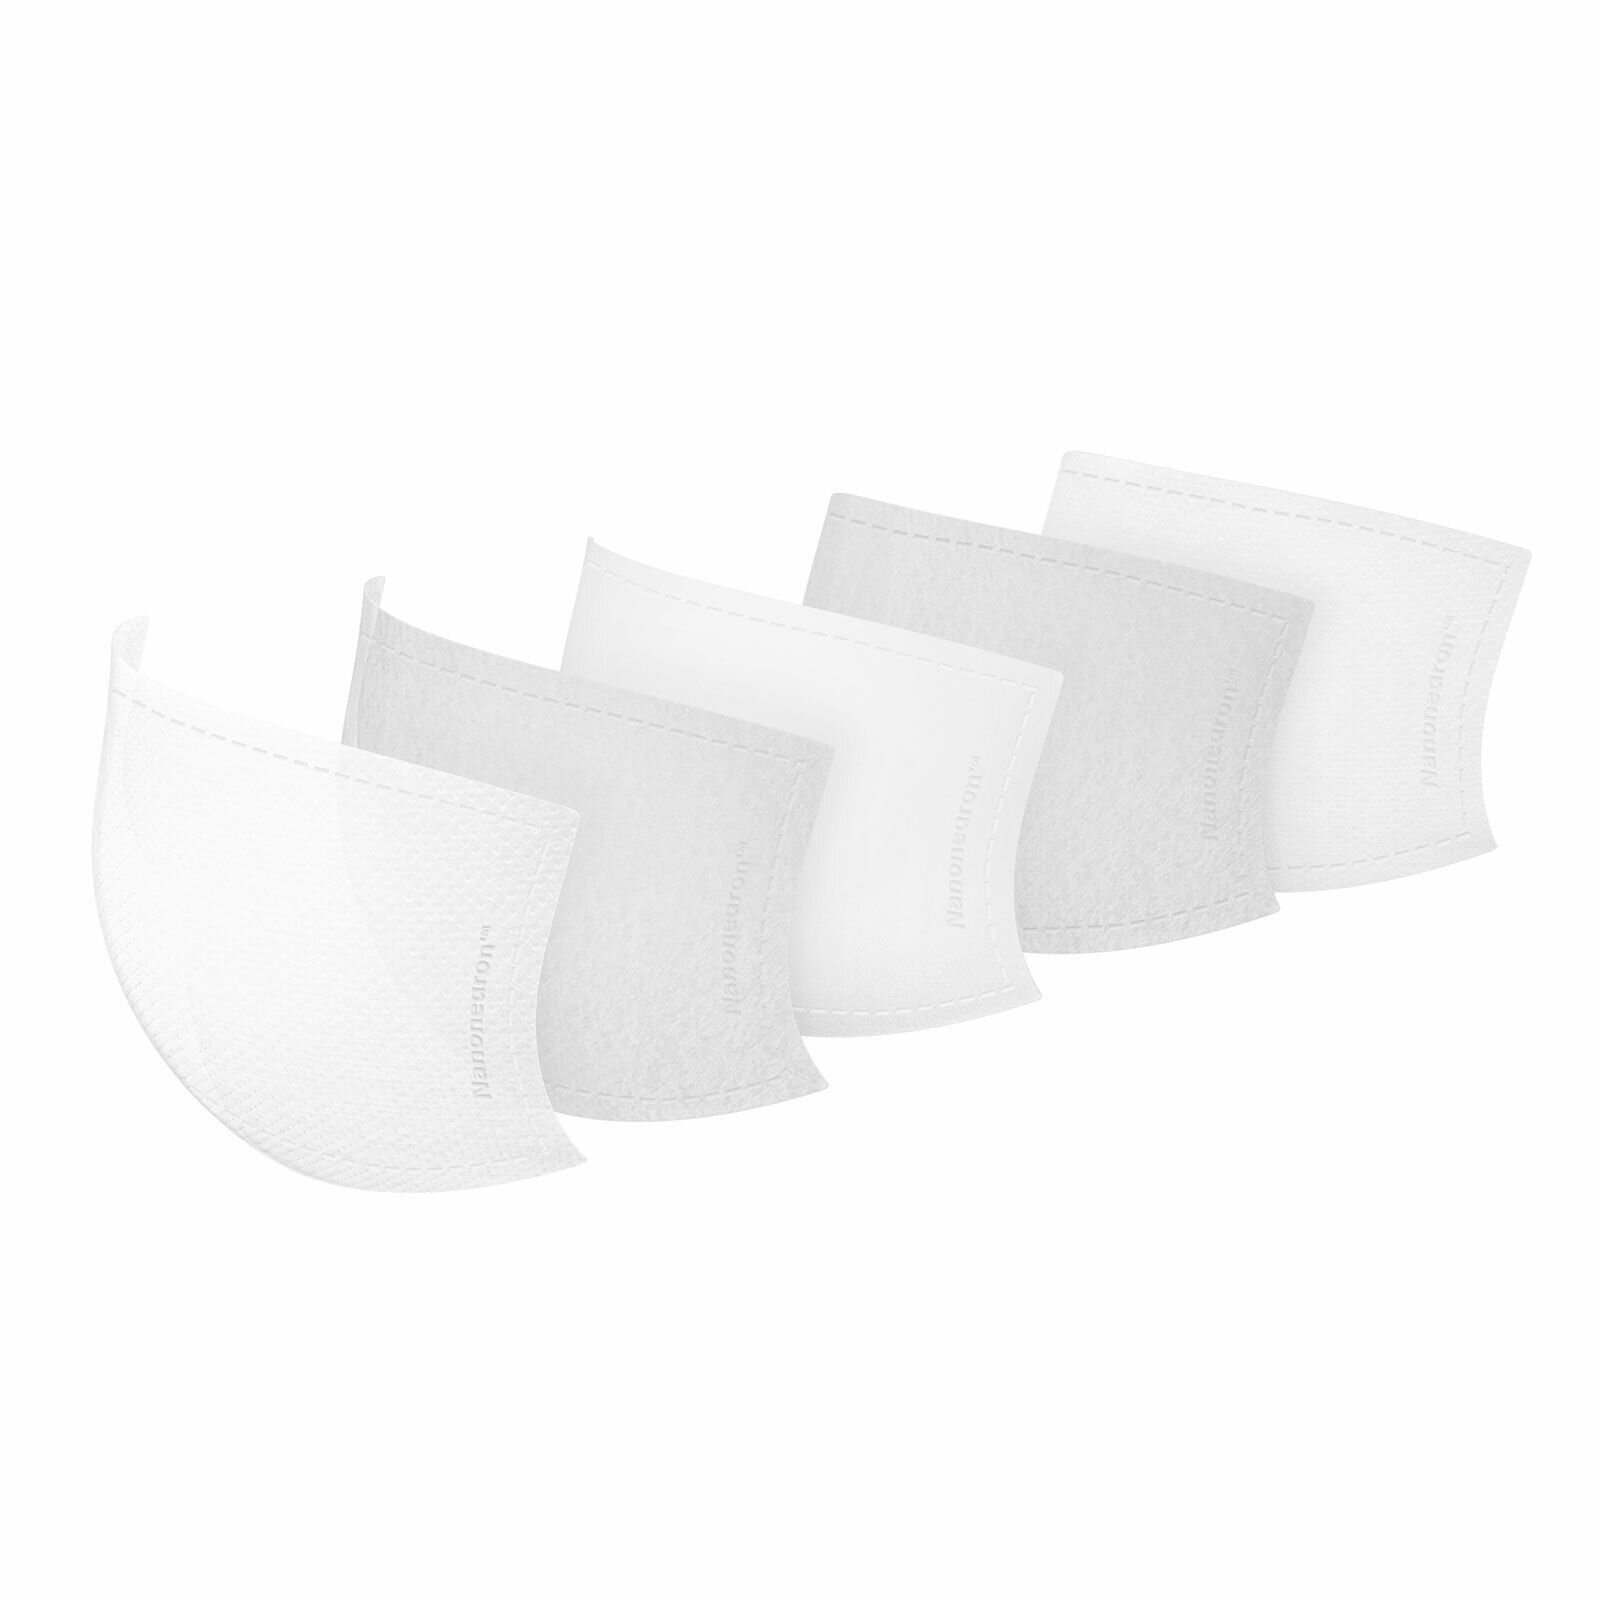 Сменные фильтры Moshi Nanohedron для многоразовой тканевой маски OmniGuard (размер M|L, комплект 5 штук) (Белый | White)